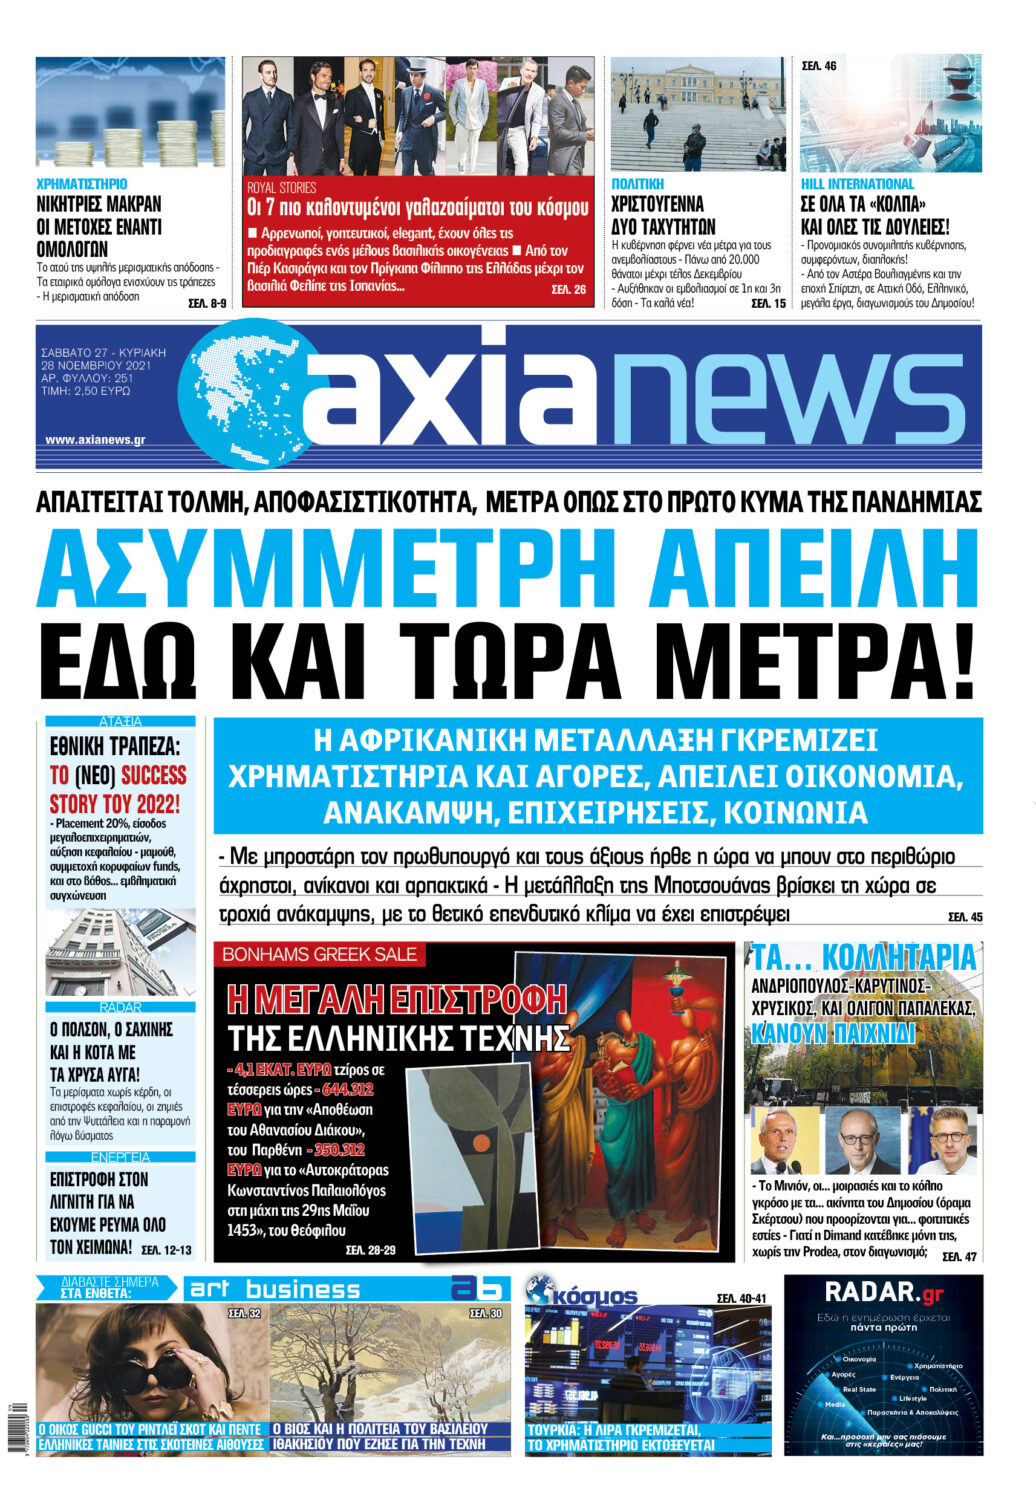  Διαβάστε στην «axianews» όλο το ρεπορτάζ της εβδομάδας για την οικονομία, το χρηματιστήριο, τις τράπεζες, τις επιχειρήσεις και την πολιτική, με πολλές αποκαλύψεις και πλούσιο παρασκήνιο.